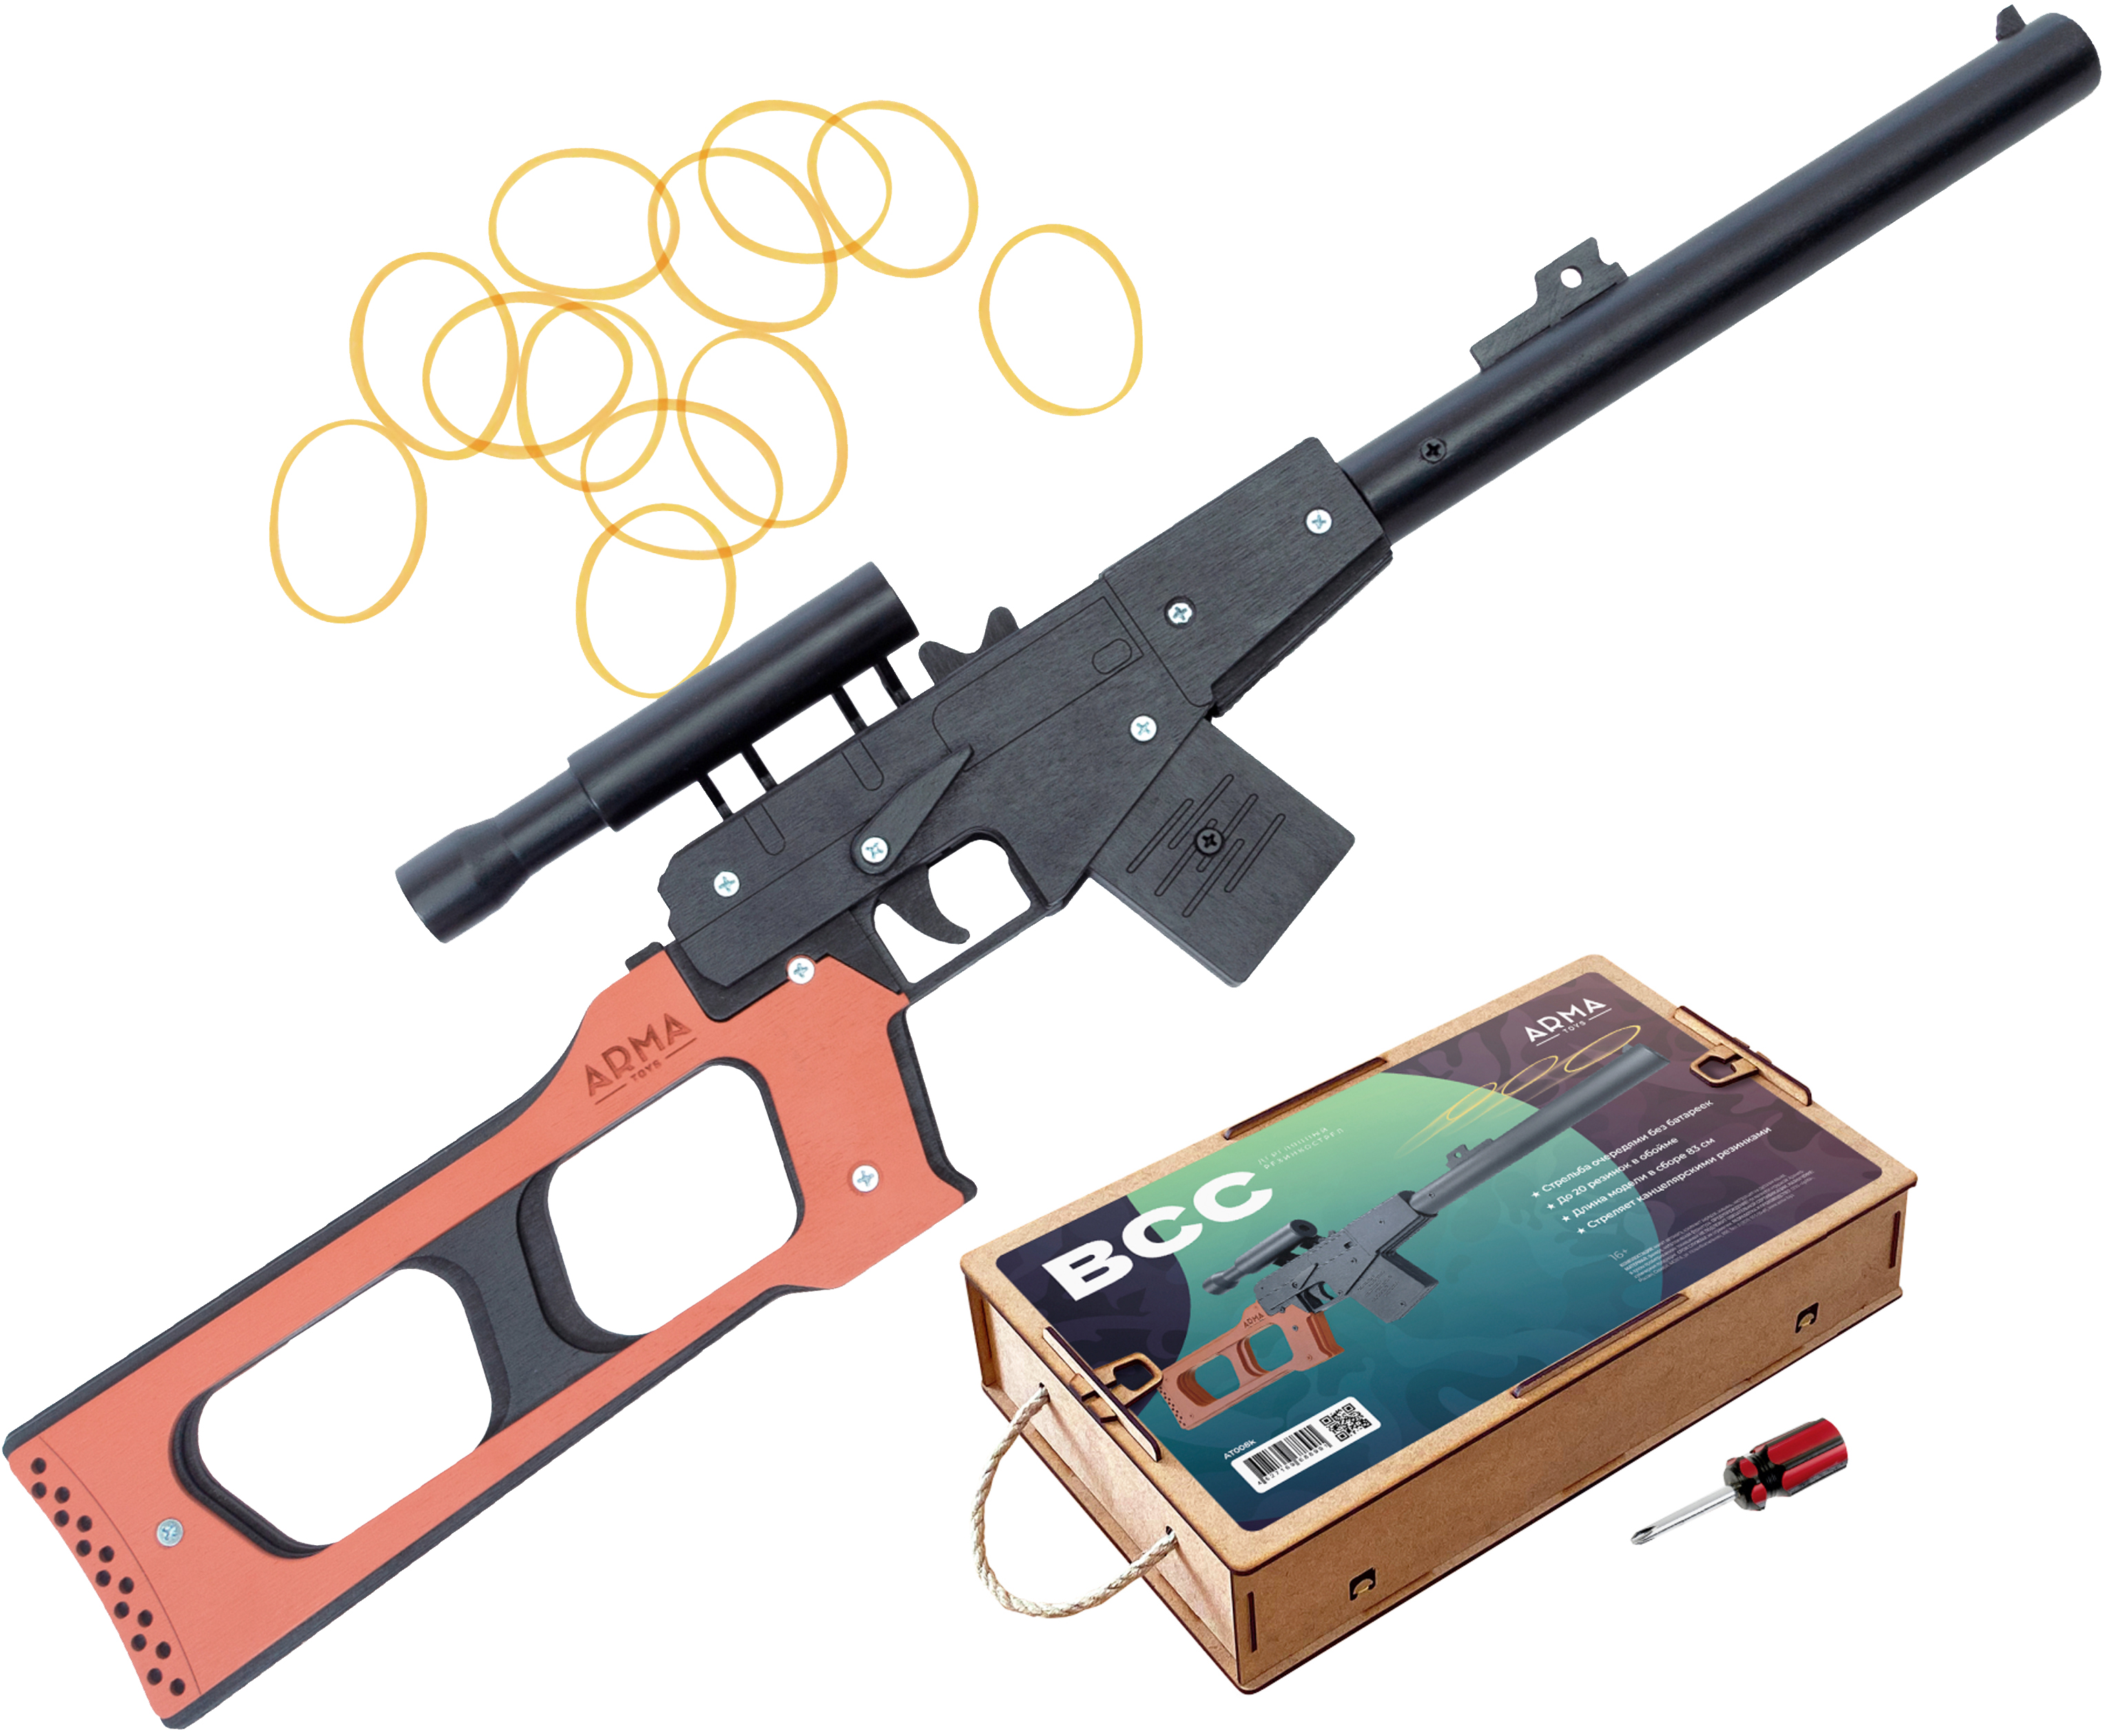 Резинкострел игрушечный Arma toys ВСС Винторез макет, окрашенный, АТ008К резинкострел arma toys пистолет glock light макет глок 26 at027 окрашенный